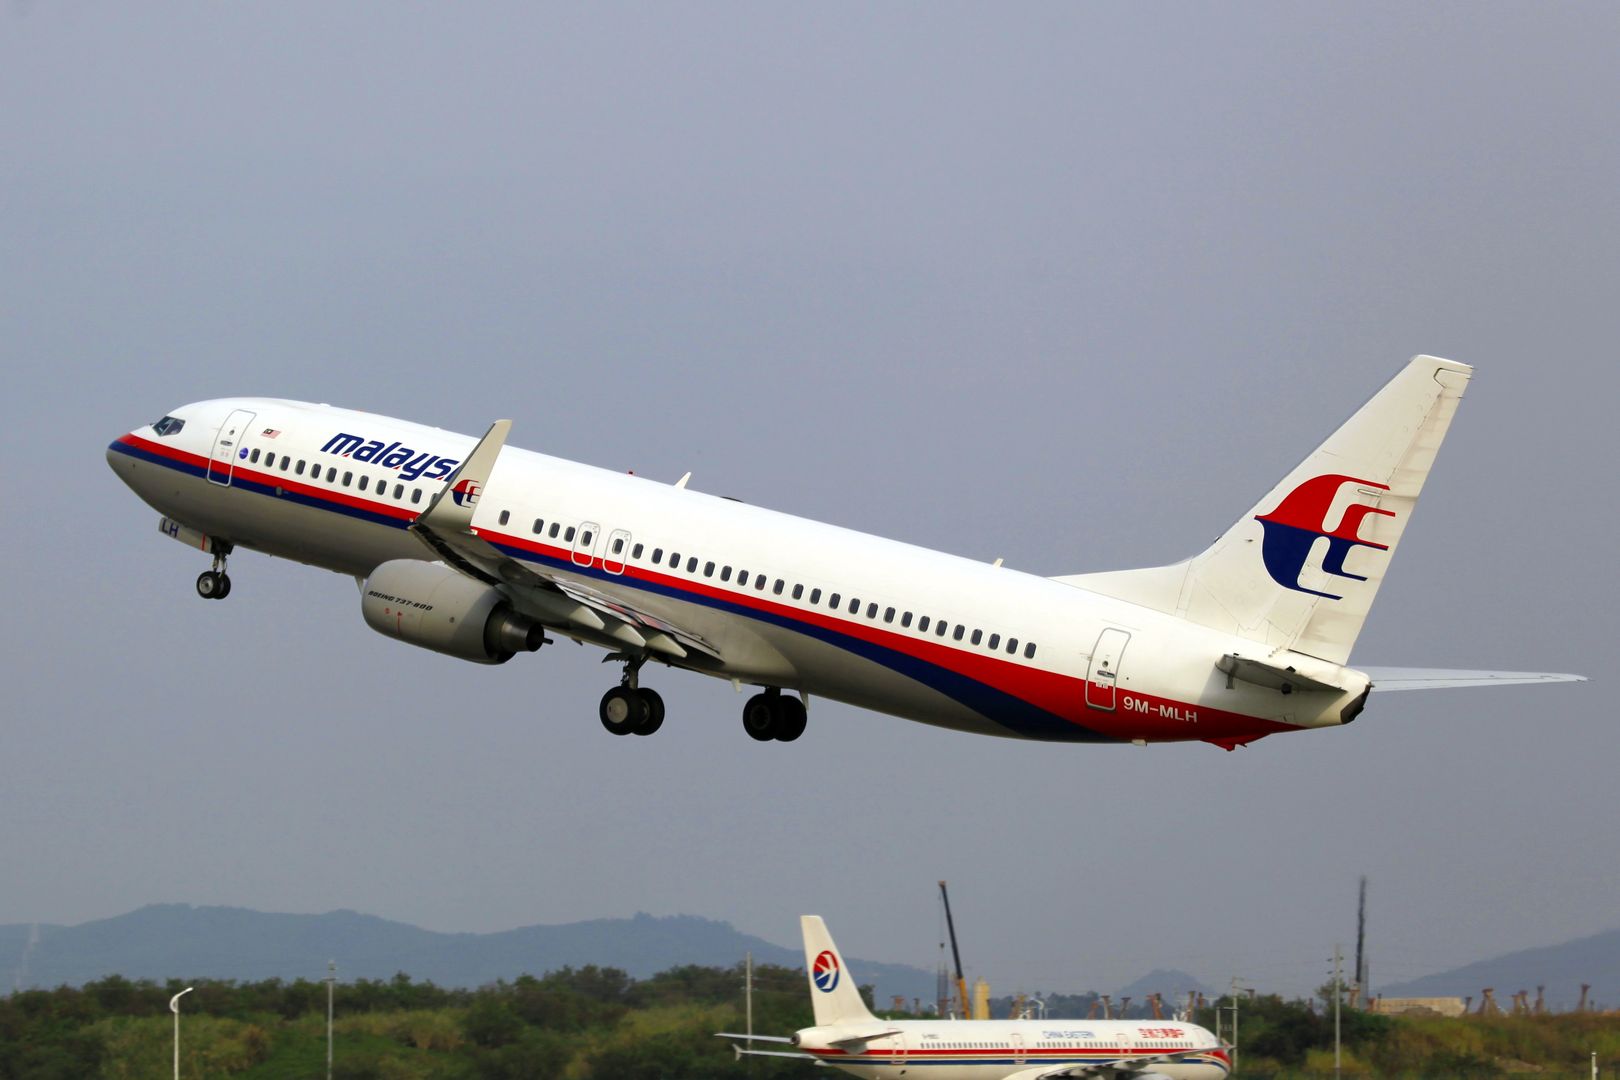 Zaginięcie MH370. Nowe teorie ws. zagadki samolotu Malaysia Airlines 370